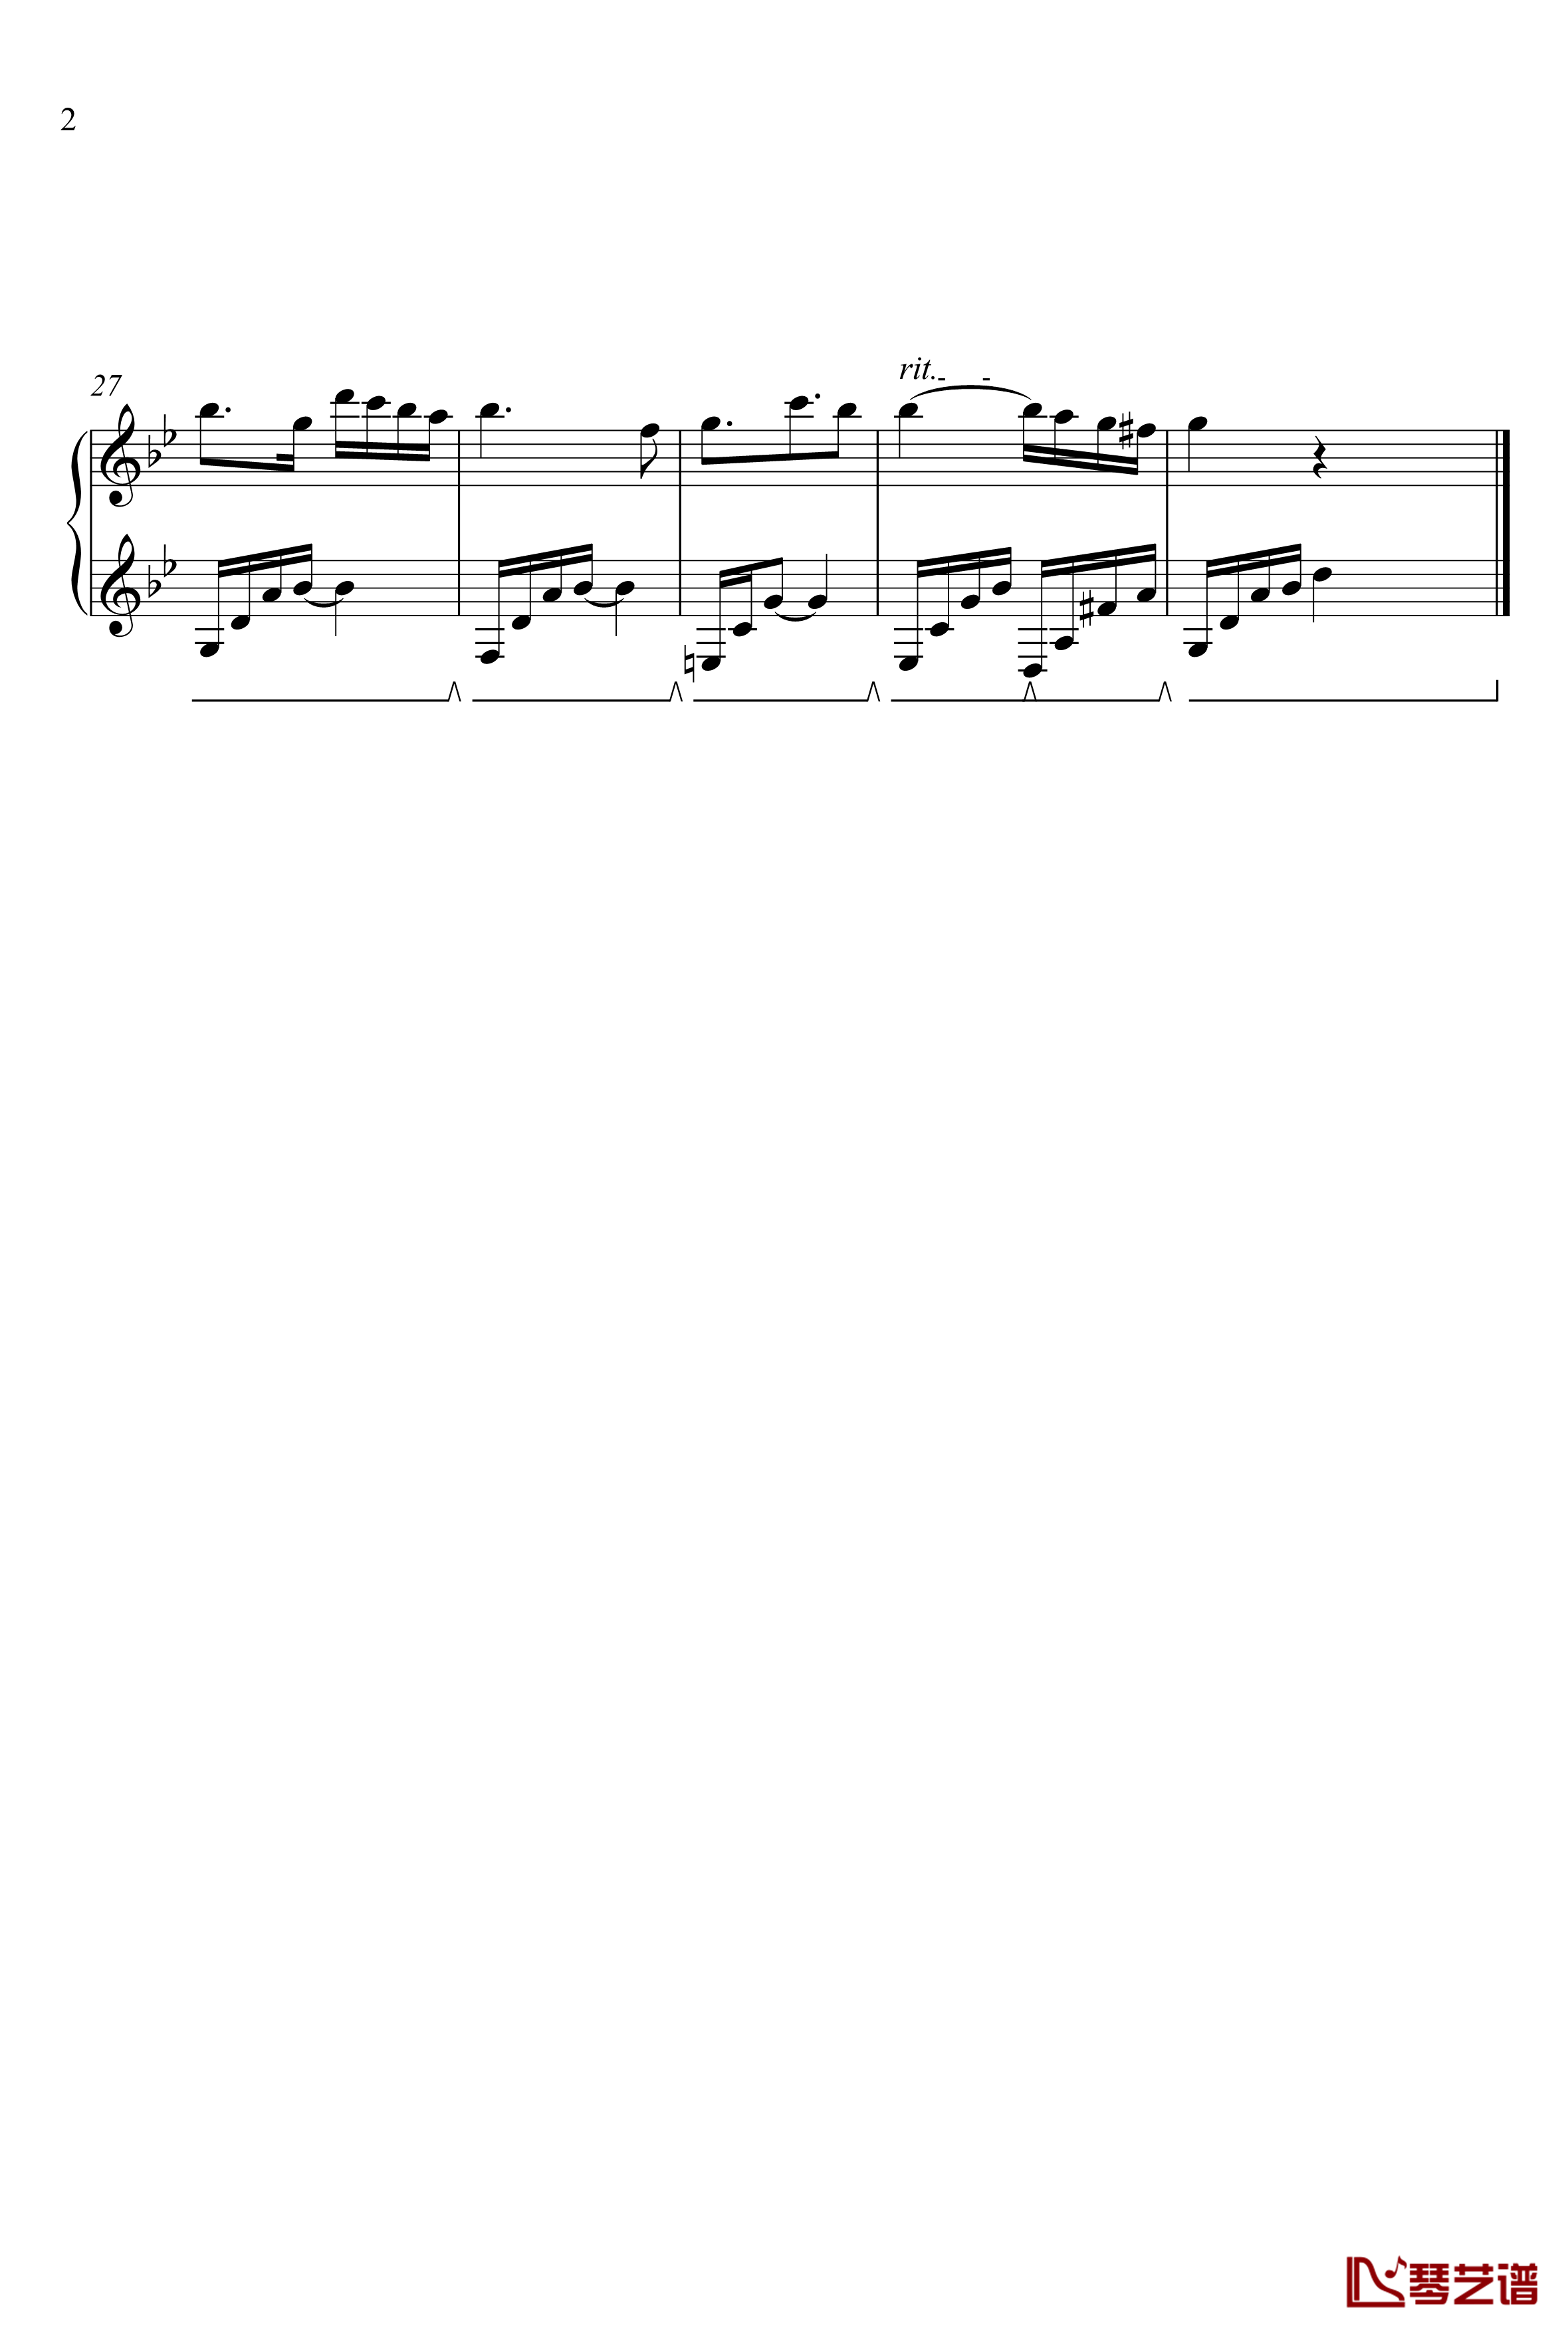  Bagatelle No. 2钢琴谱-漆政-Z42